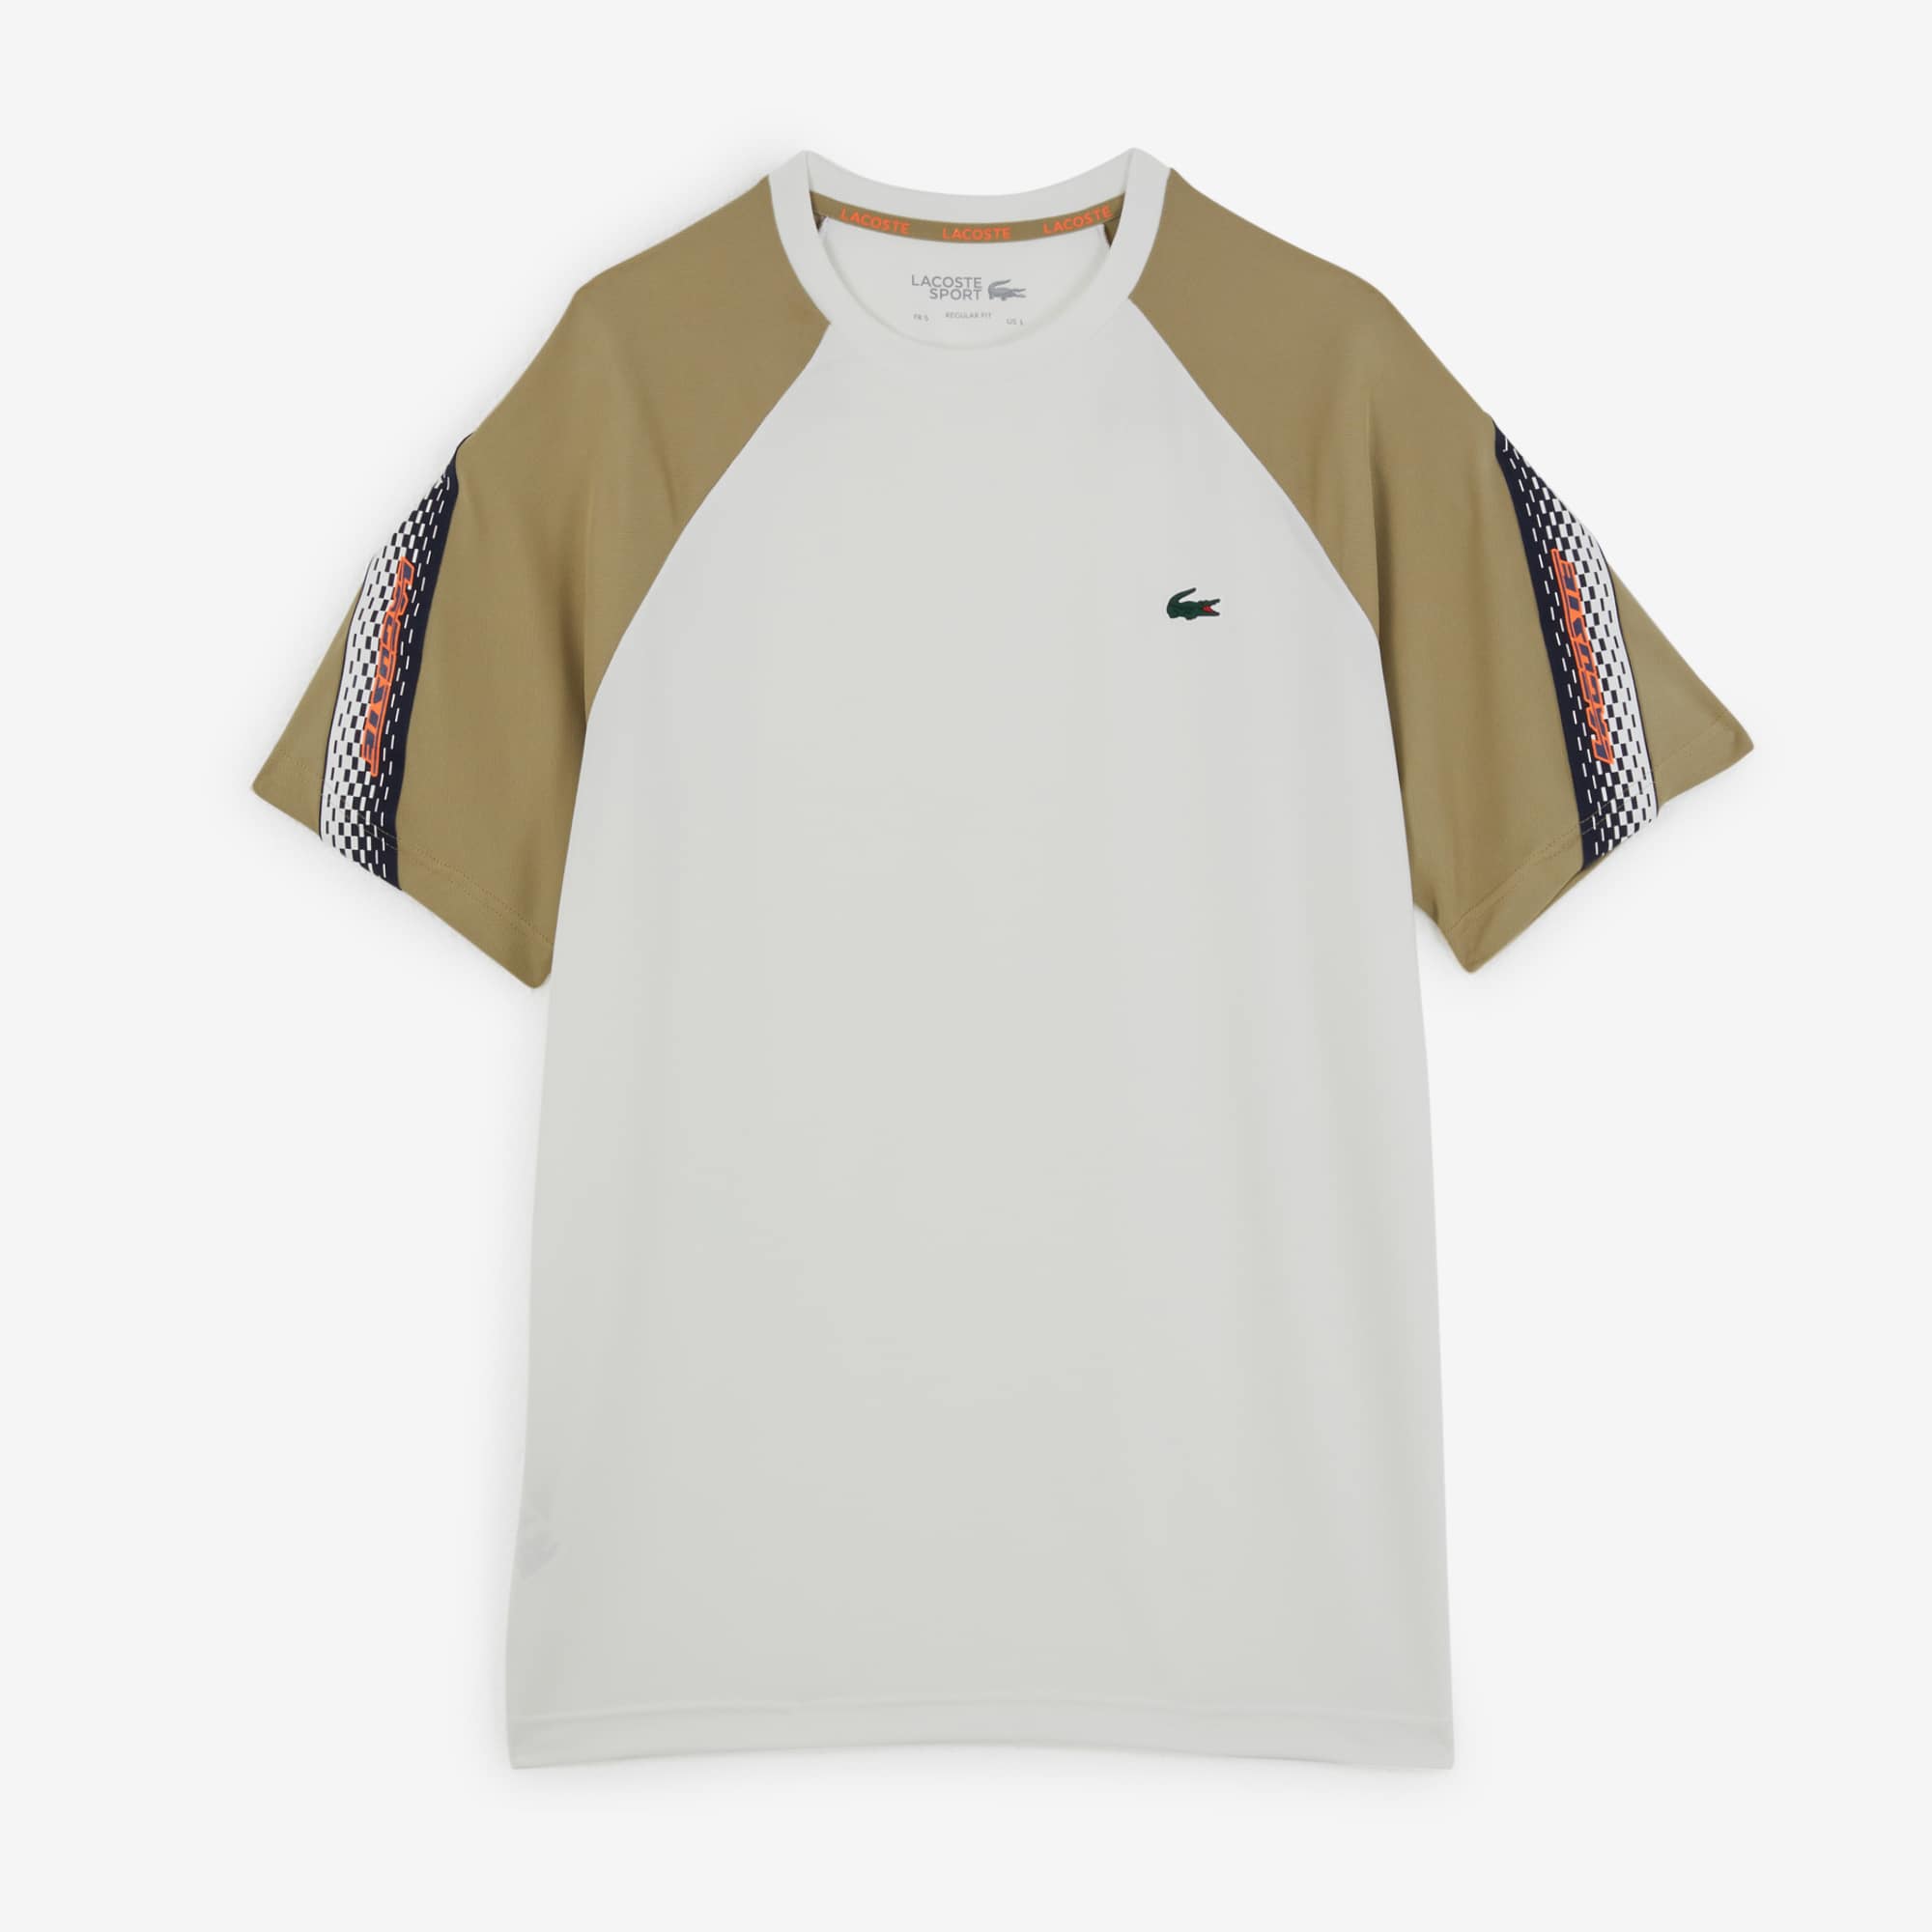 tee shirt stripes side  beige/marron